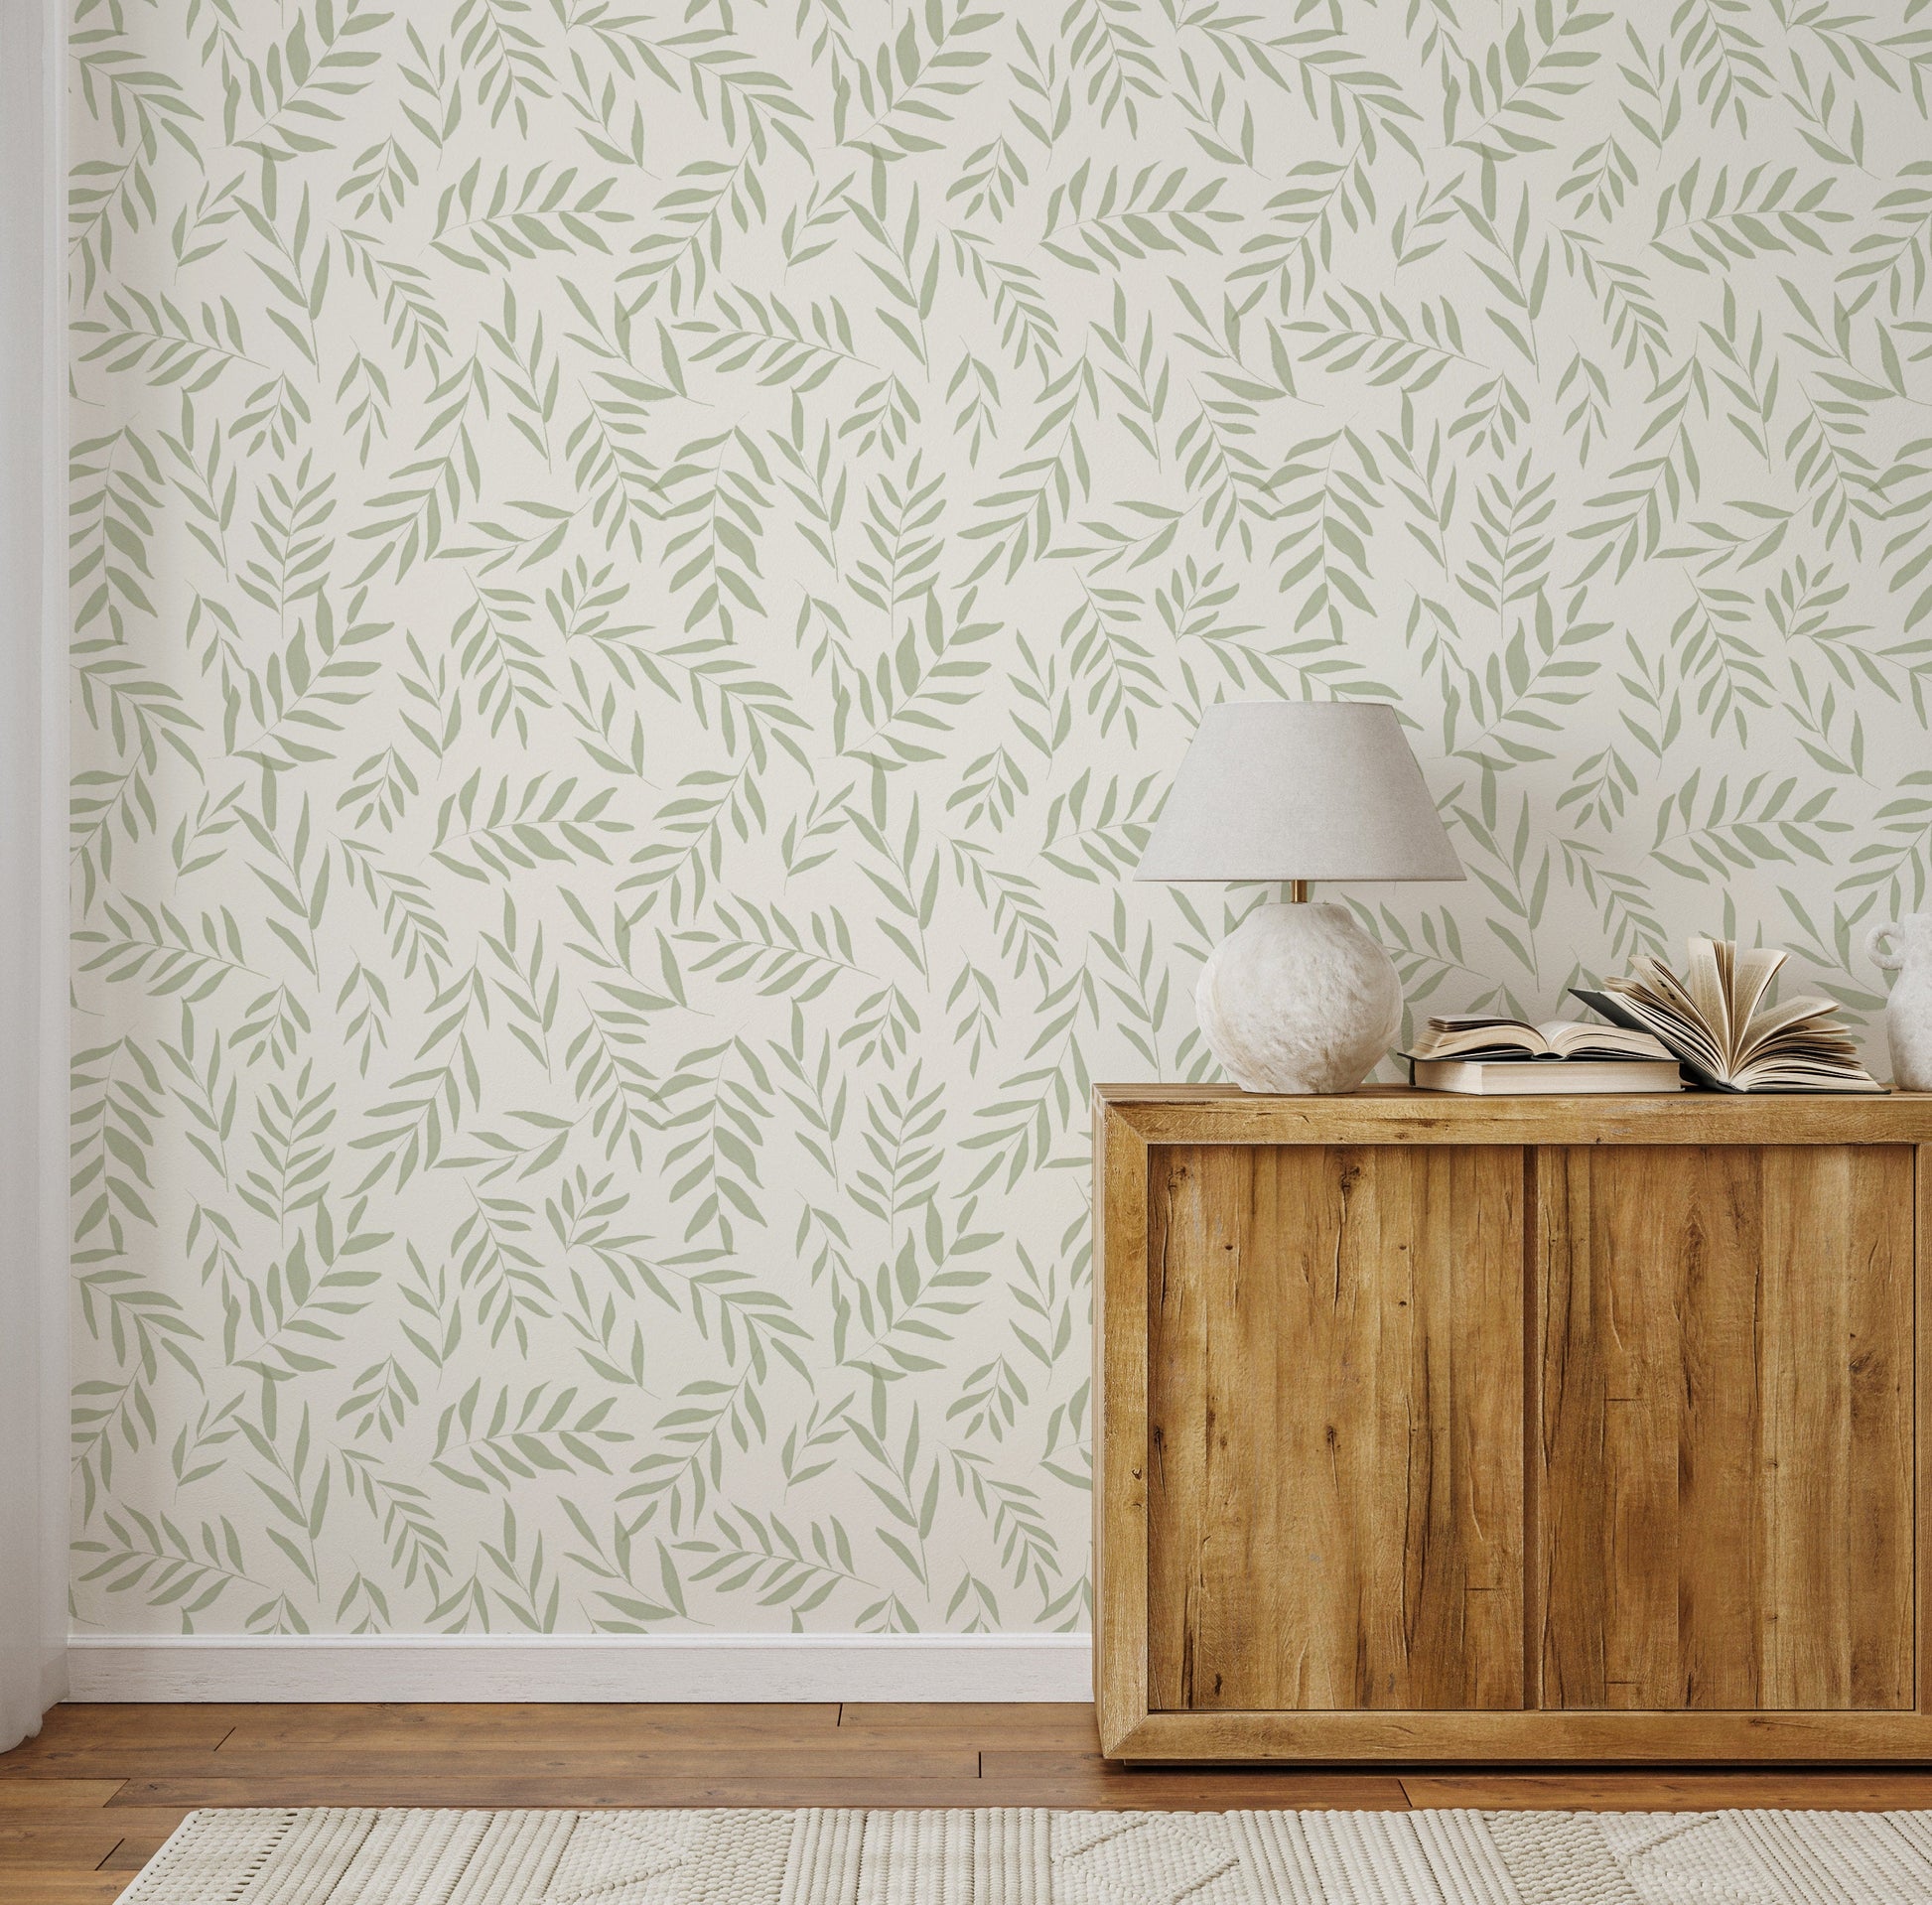 Earthy Fern Leaves Wallpaper / Palm Wallpaper / Wallpaper / Greenery Wallpaper / Neutral Nursery / Nature Nursery